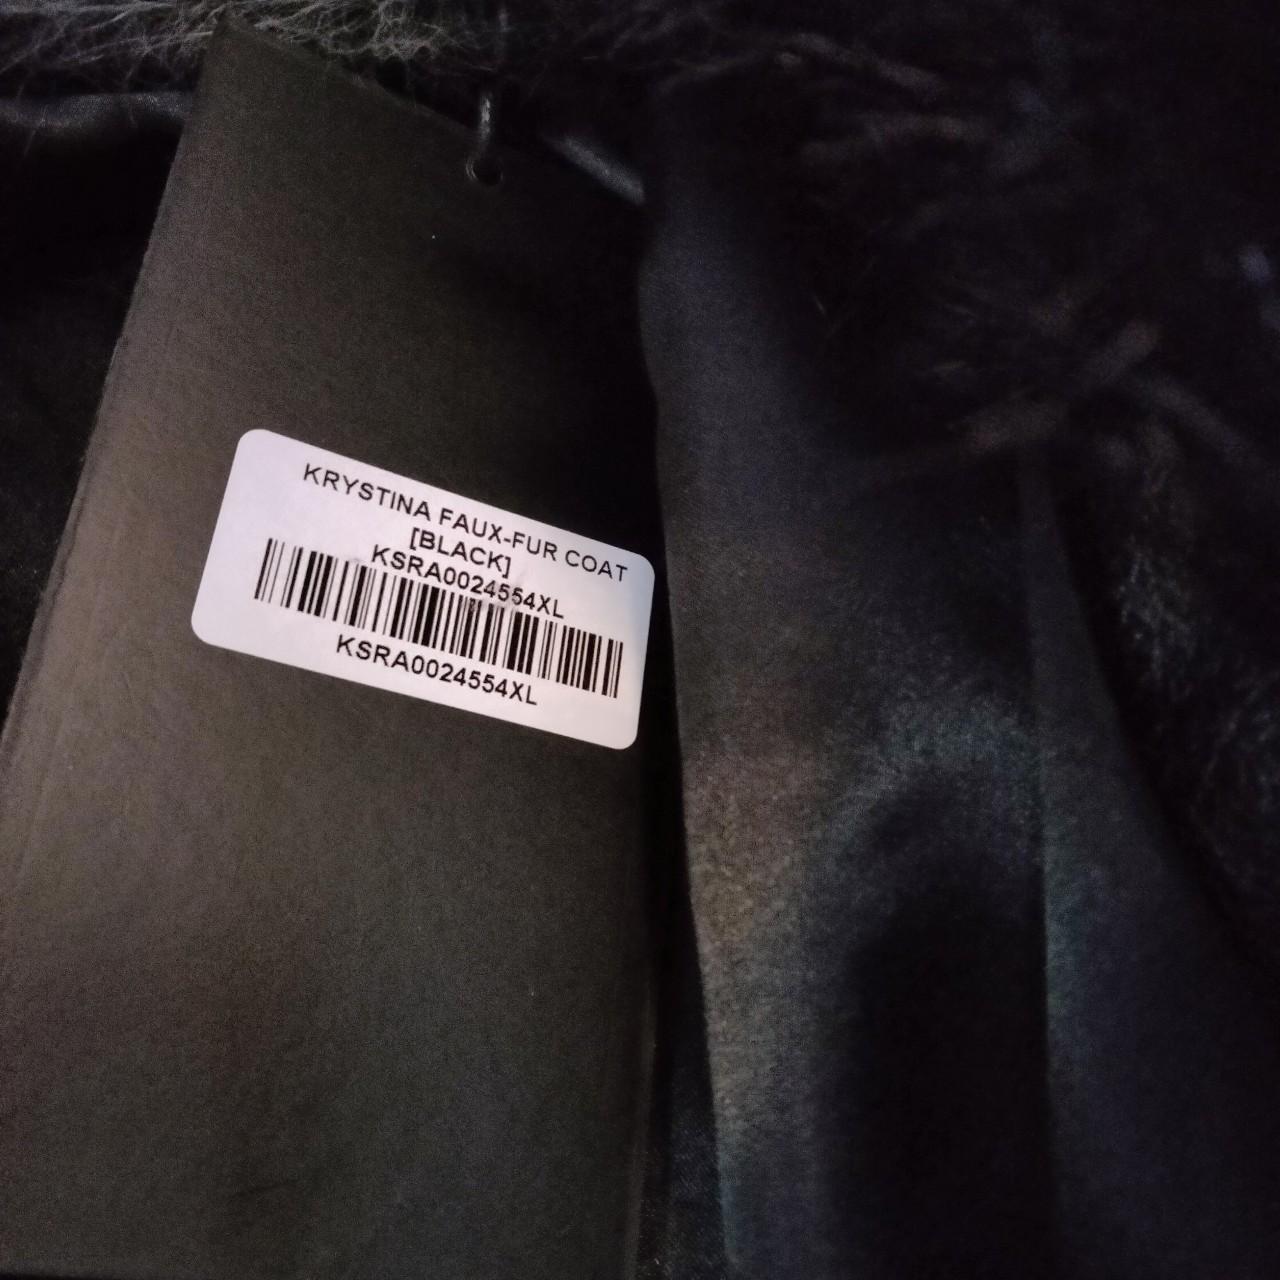 Killstar krystina faux fur coat size 4xl. Nwt. Sold... - Depop